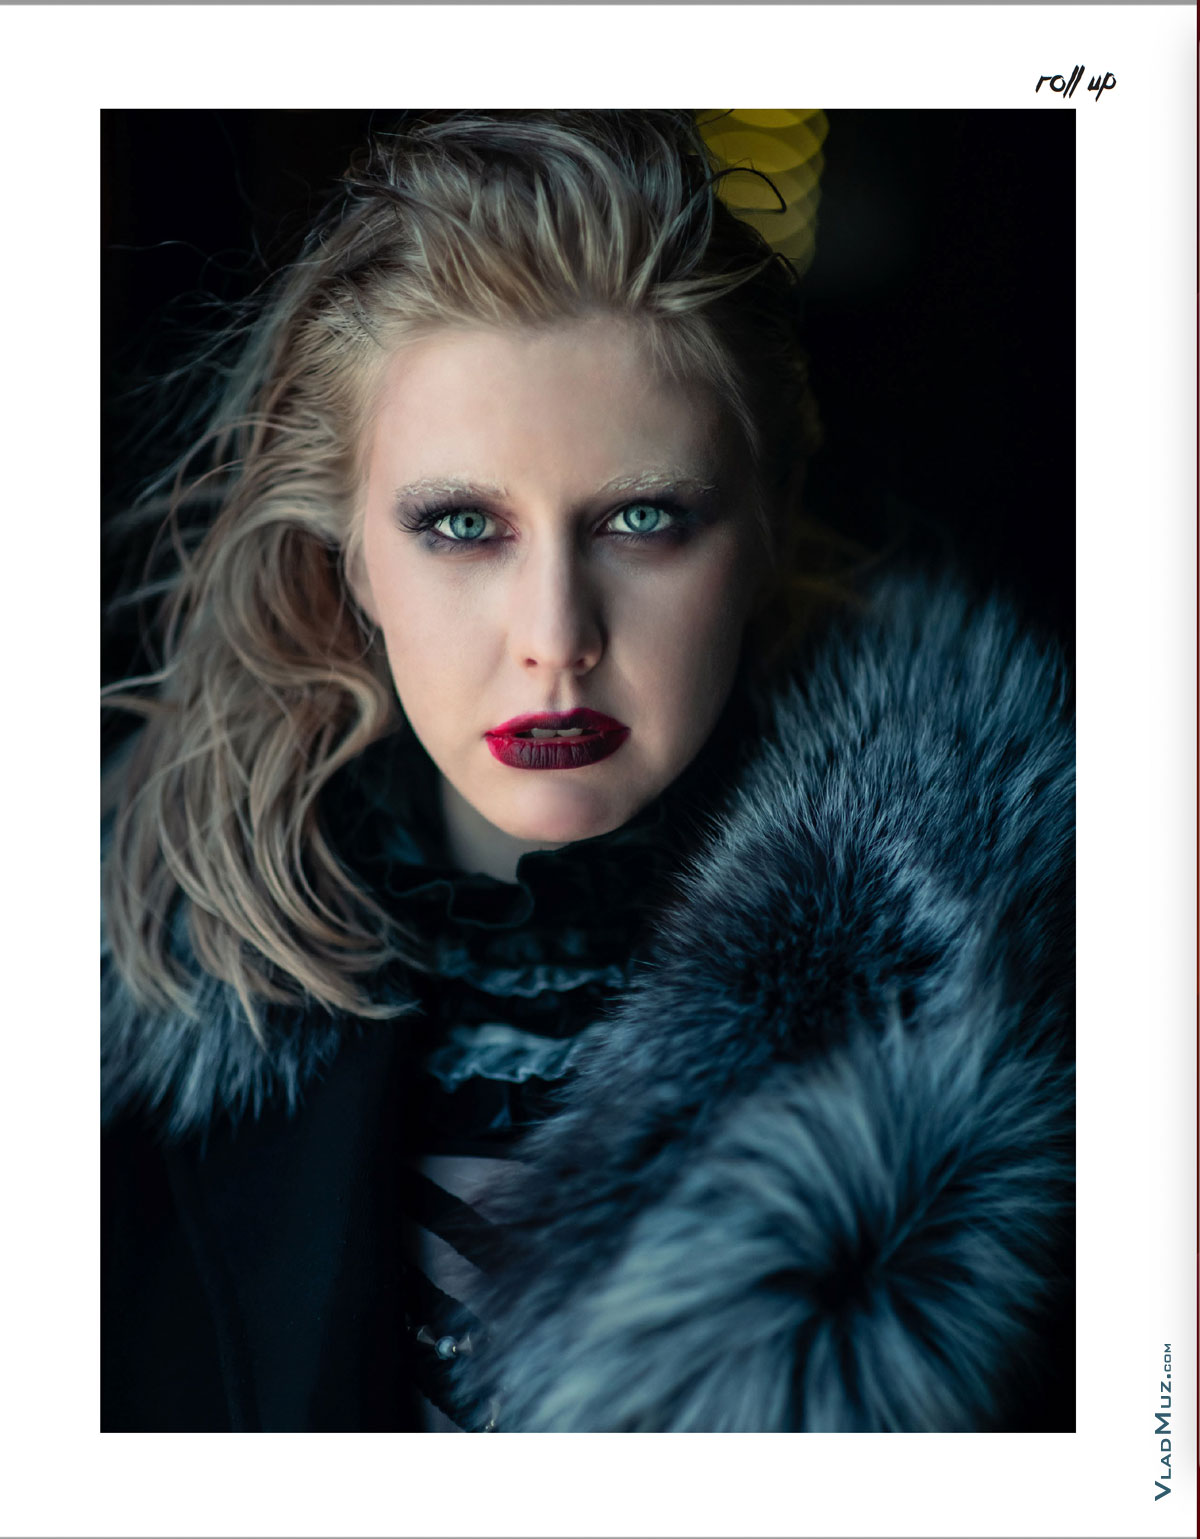 Фото девушки-модели в образе новой девушки Джейкоба Блэка из серии фотографий для журнала Roll Up Magazine